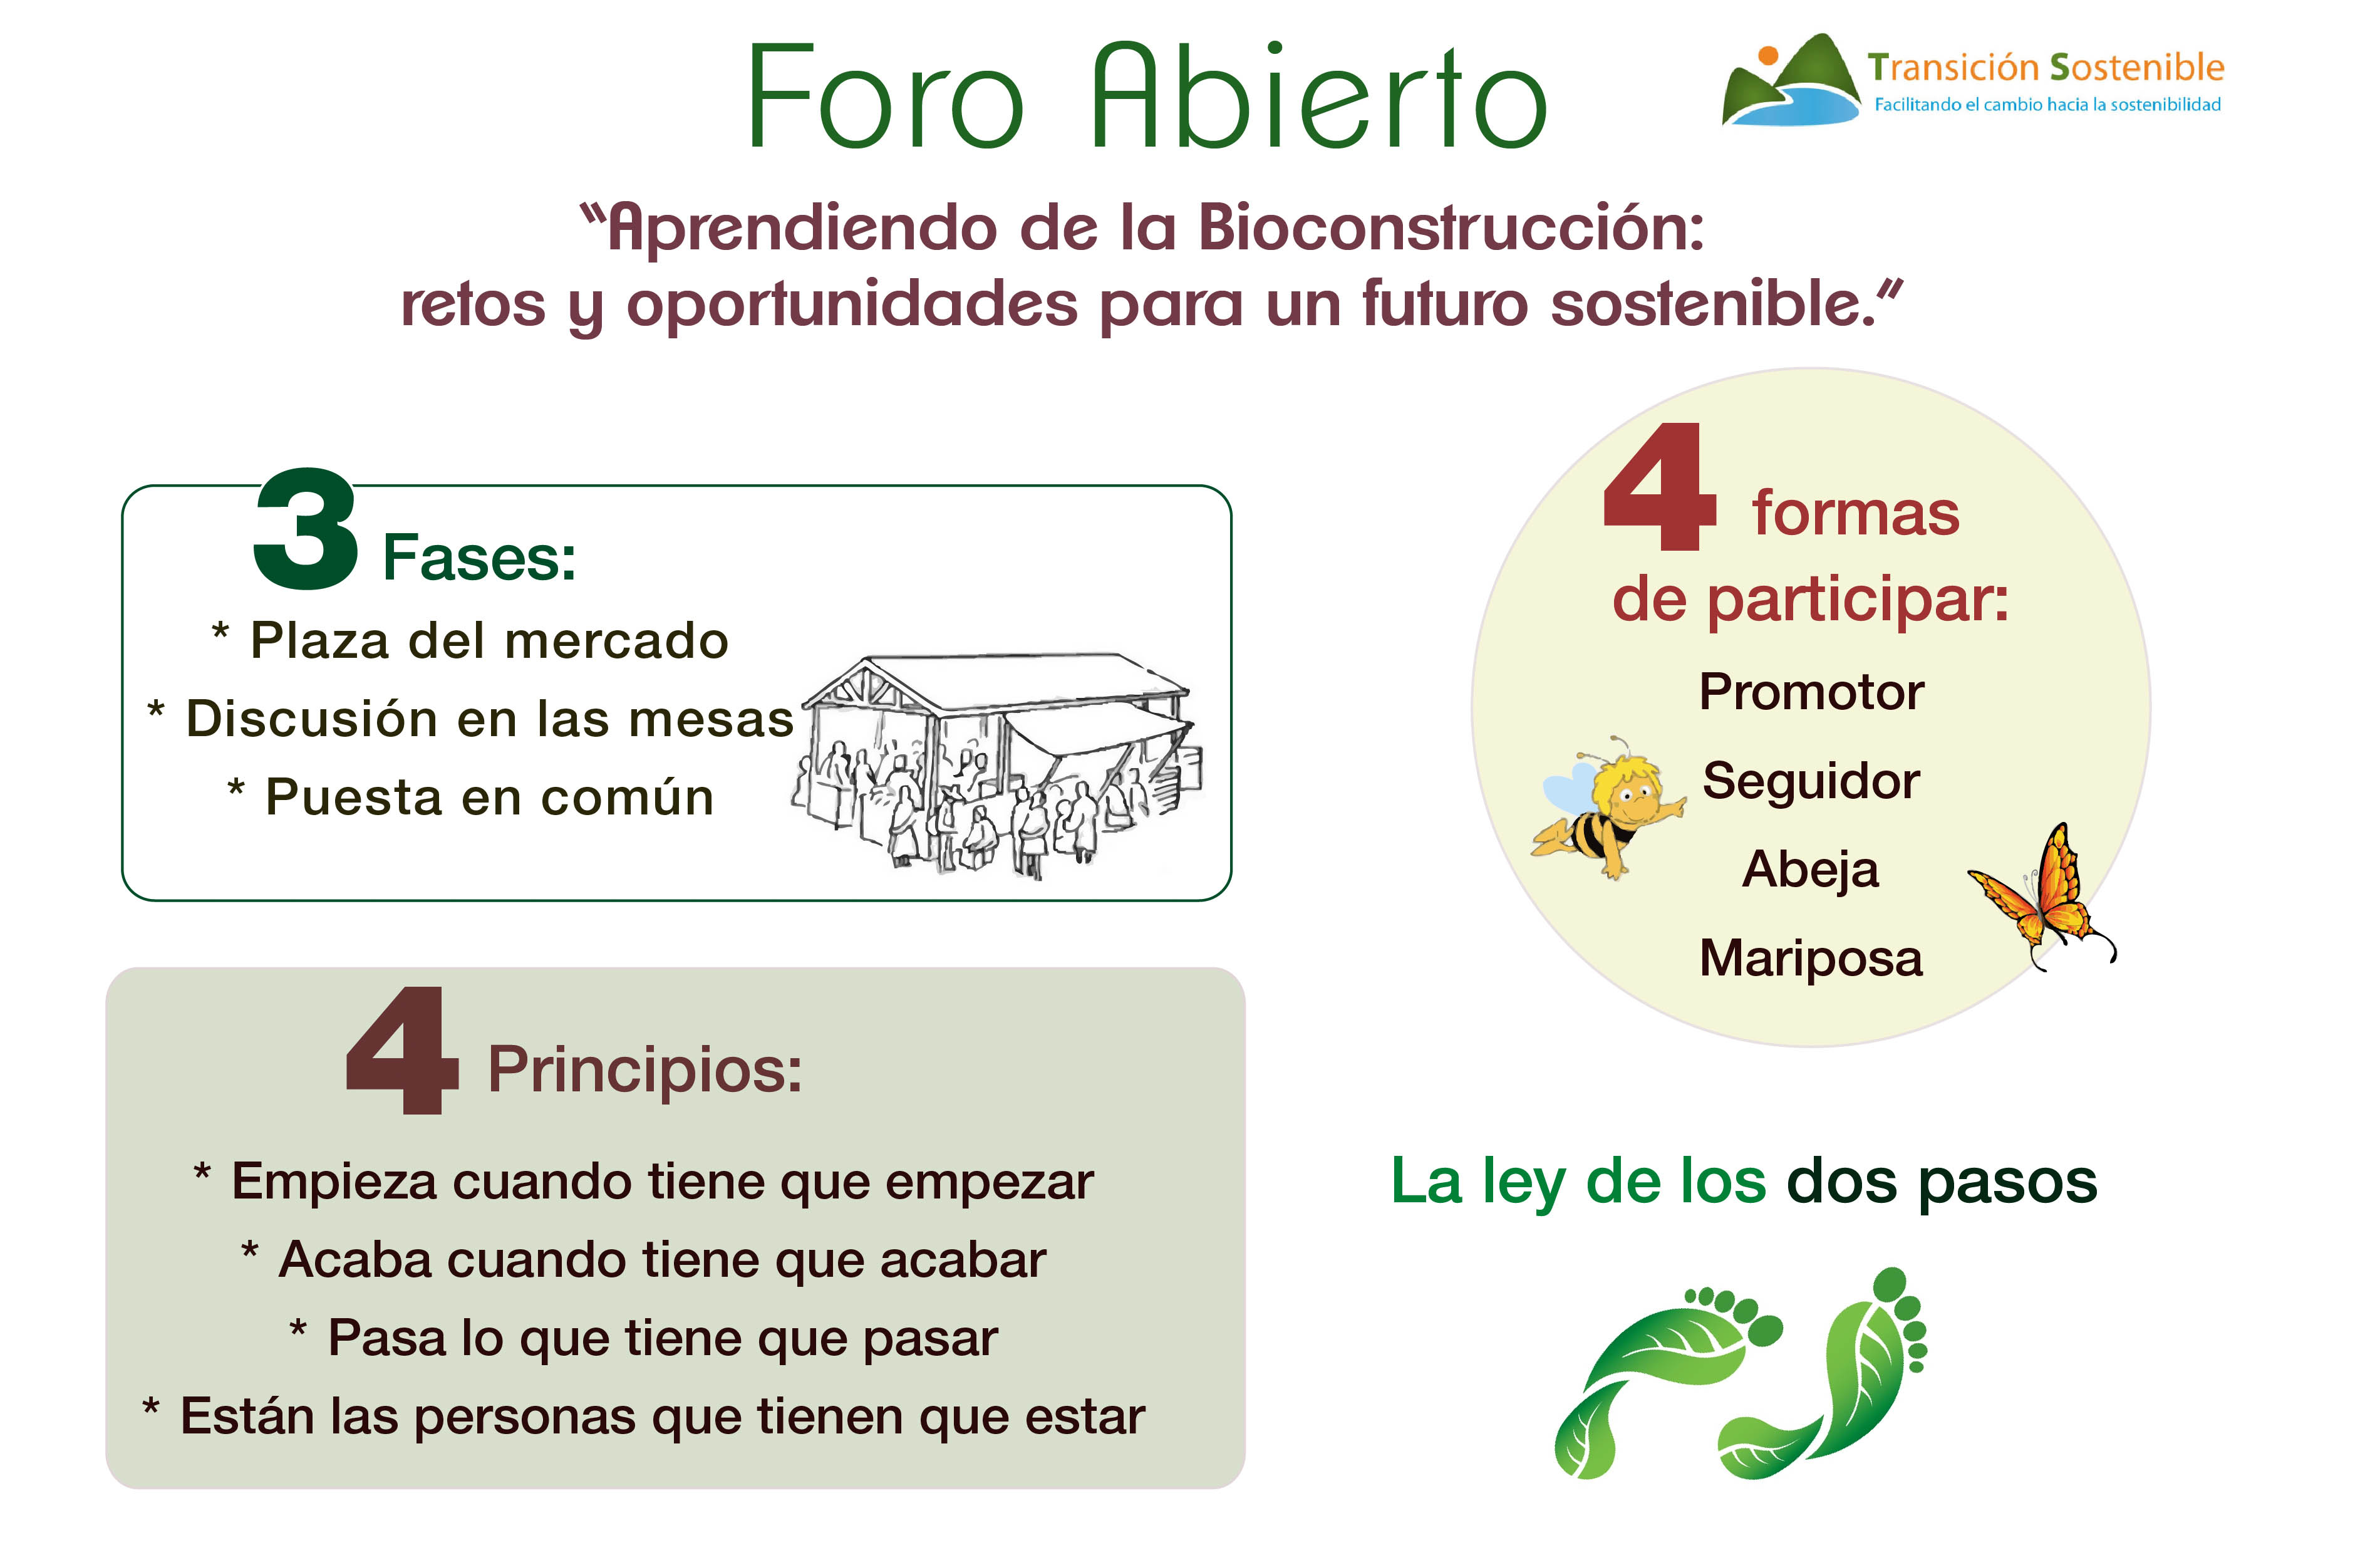 Foro-Abierto-open-space-Transición-Sostenible.jpg